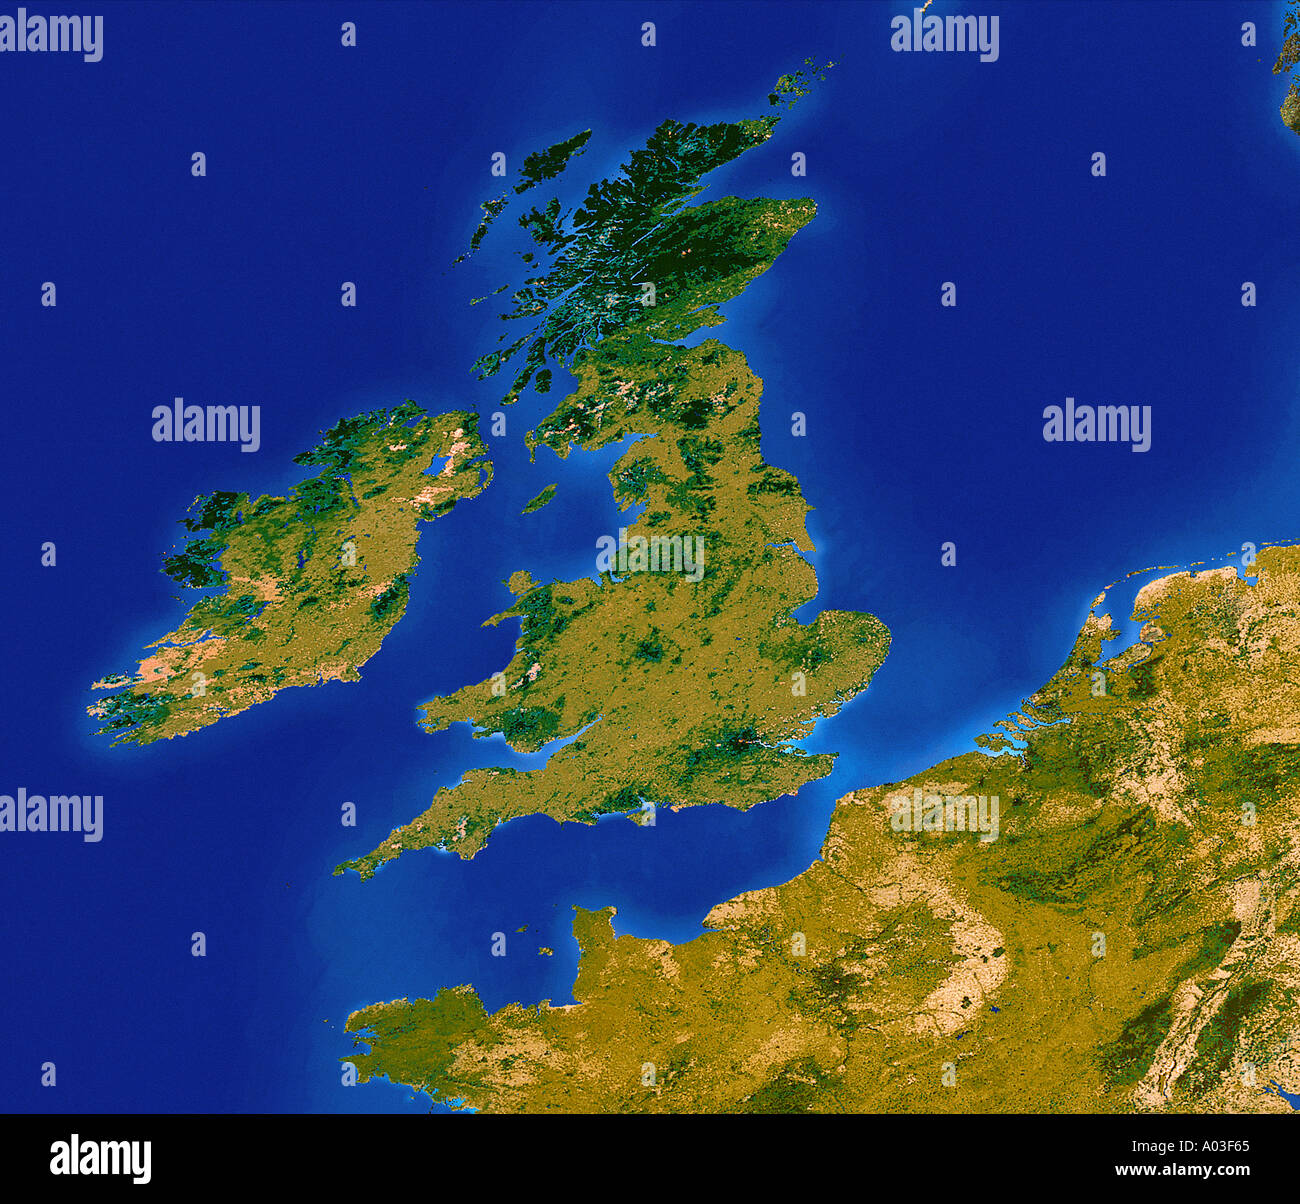 Europa und Großbritannien fotografiert aus dem Weltall per Satellit Stockfoto